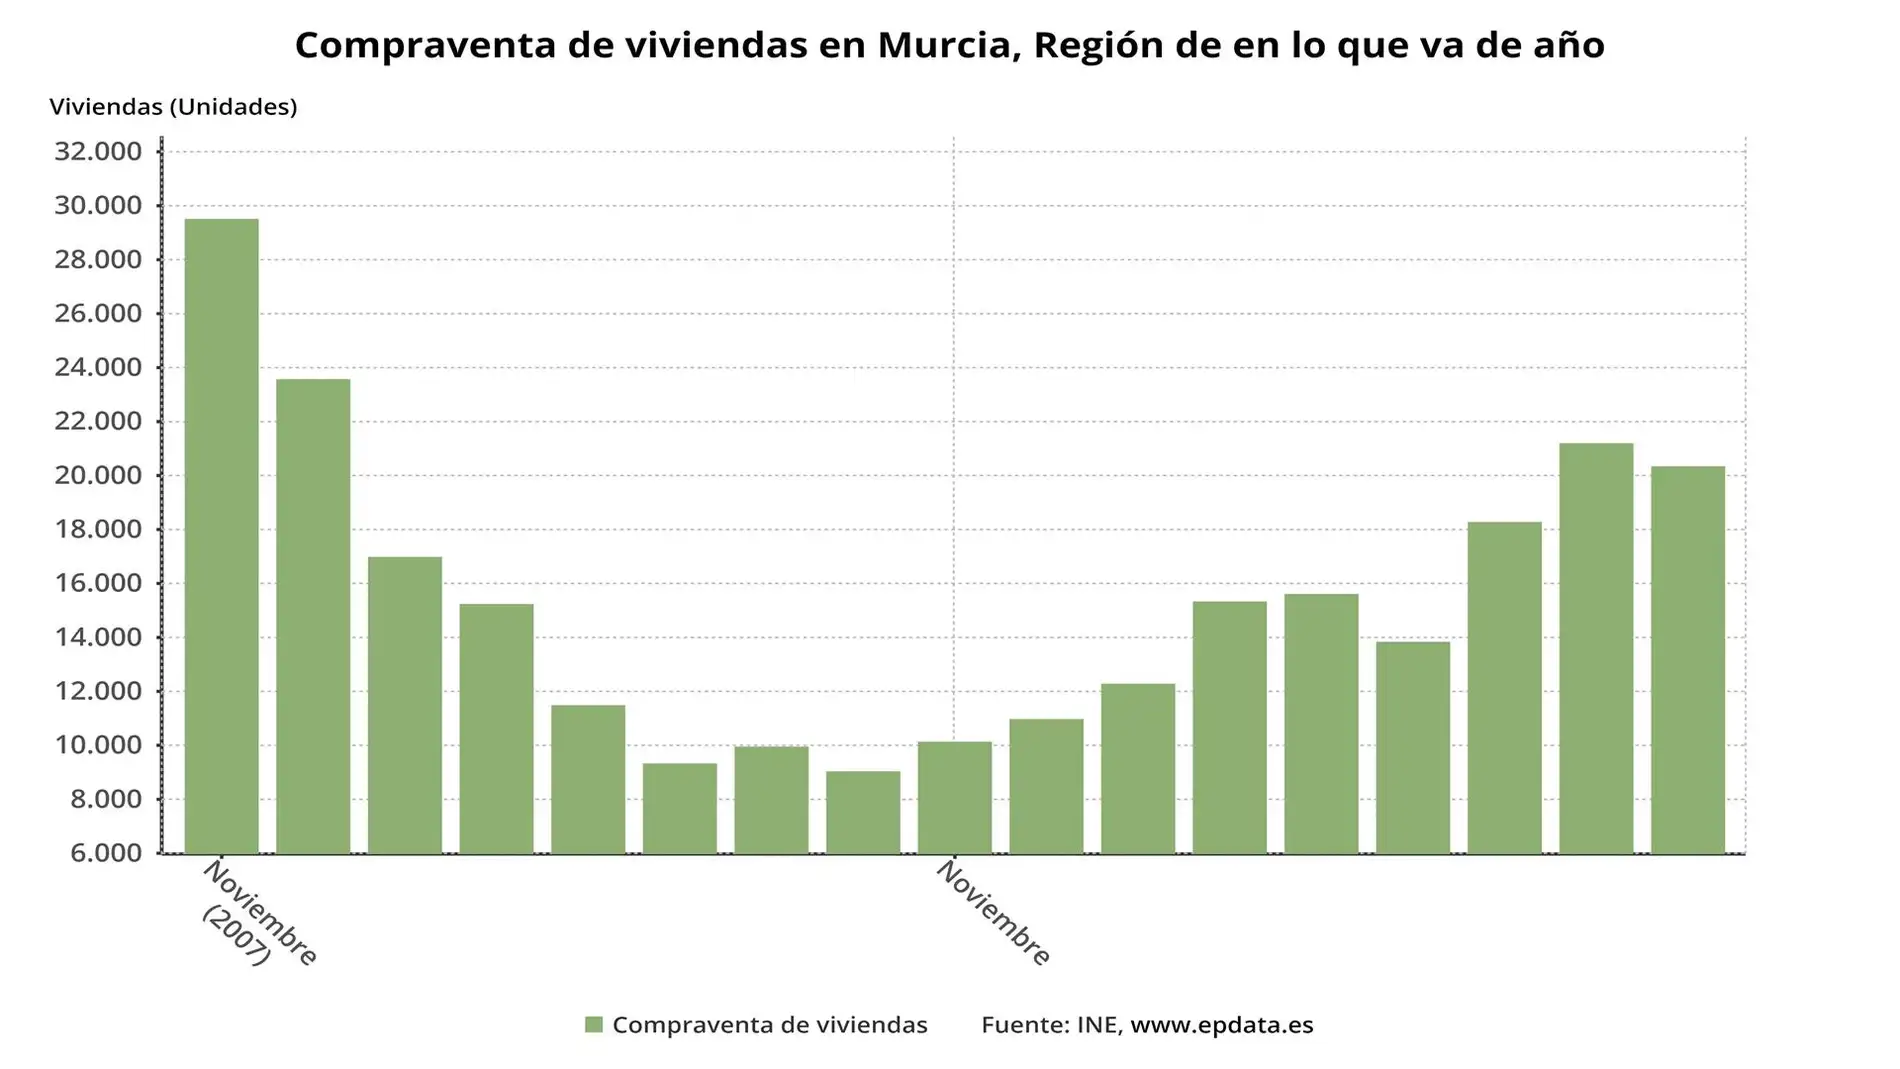 La compraventa de viviendas cae un 17,86% en diciembre en la Región de Murcia